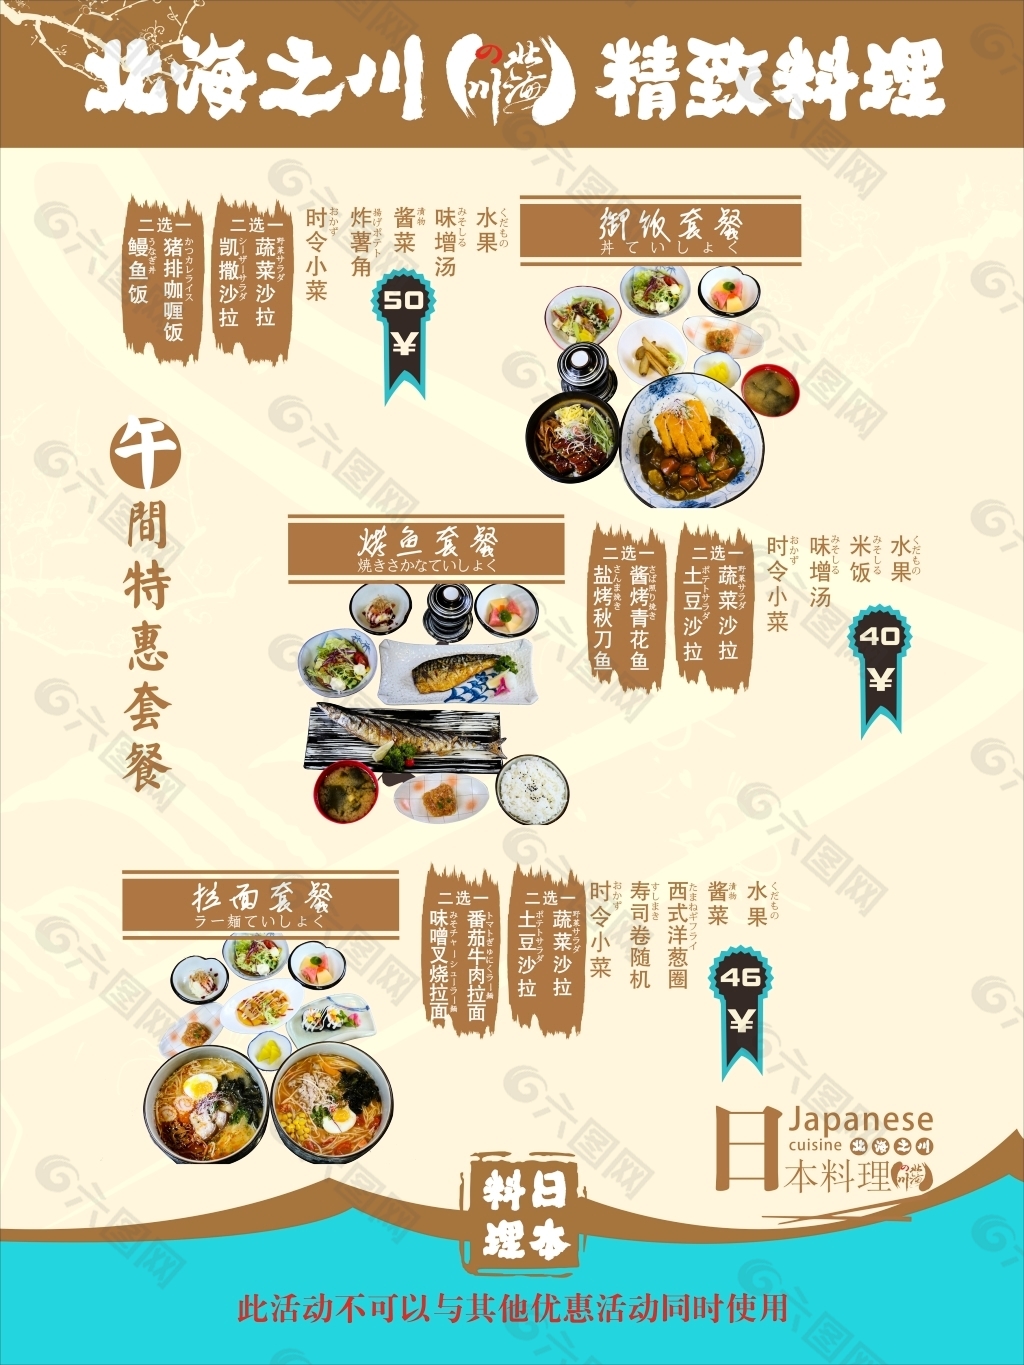 日本料理KT板午间套餐组合